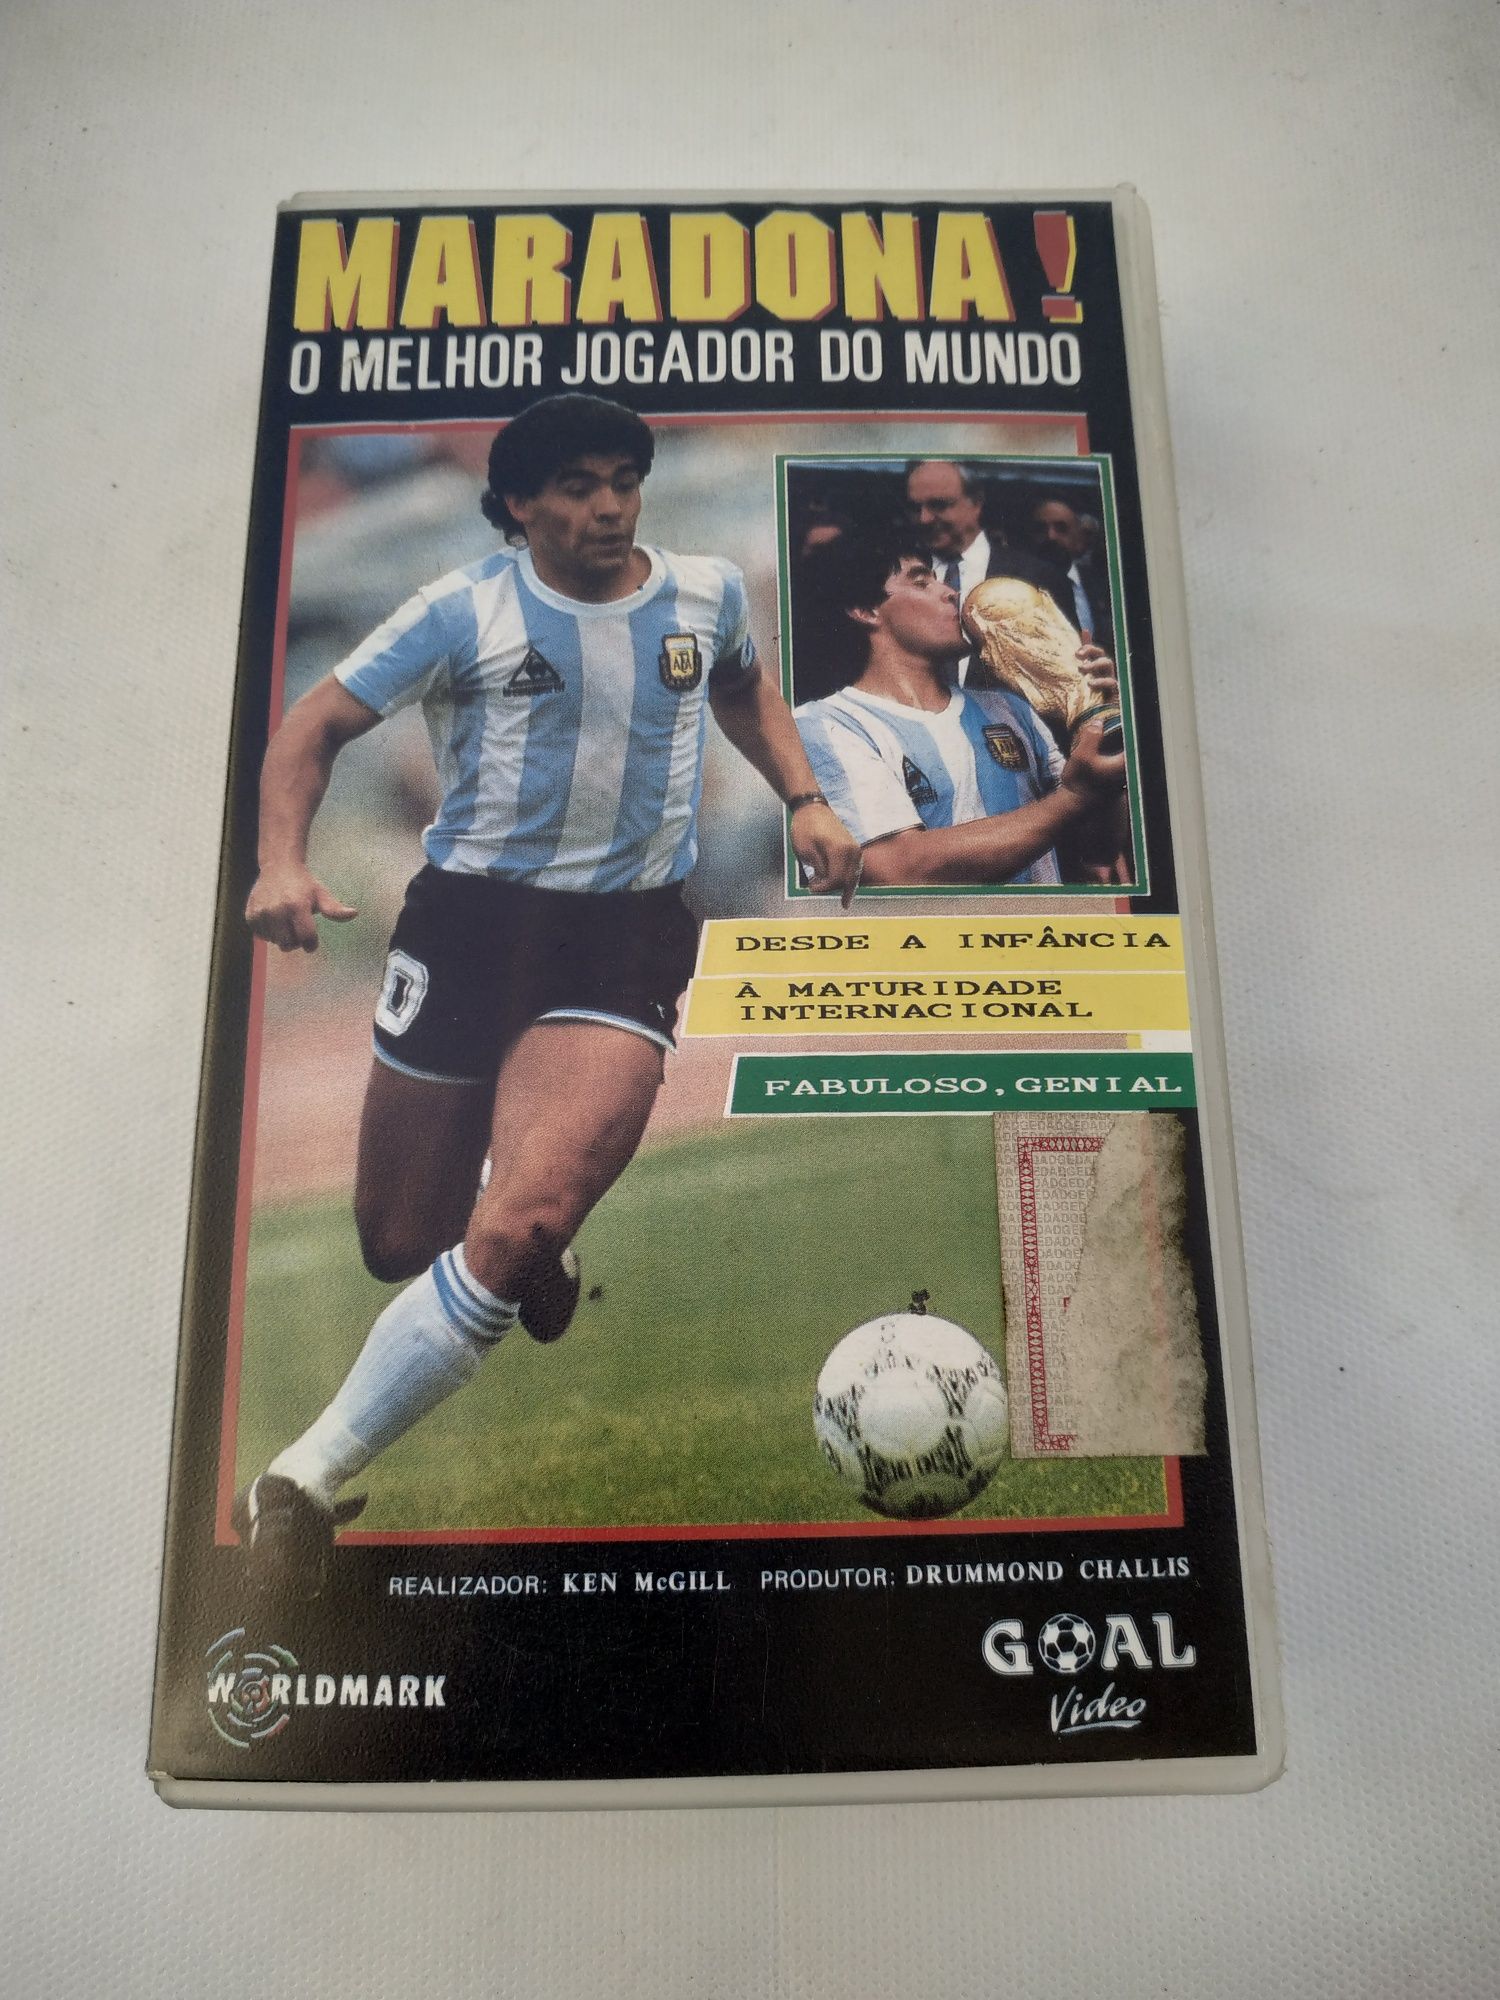 Maradona, o melhor jogador do mundo.